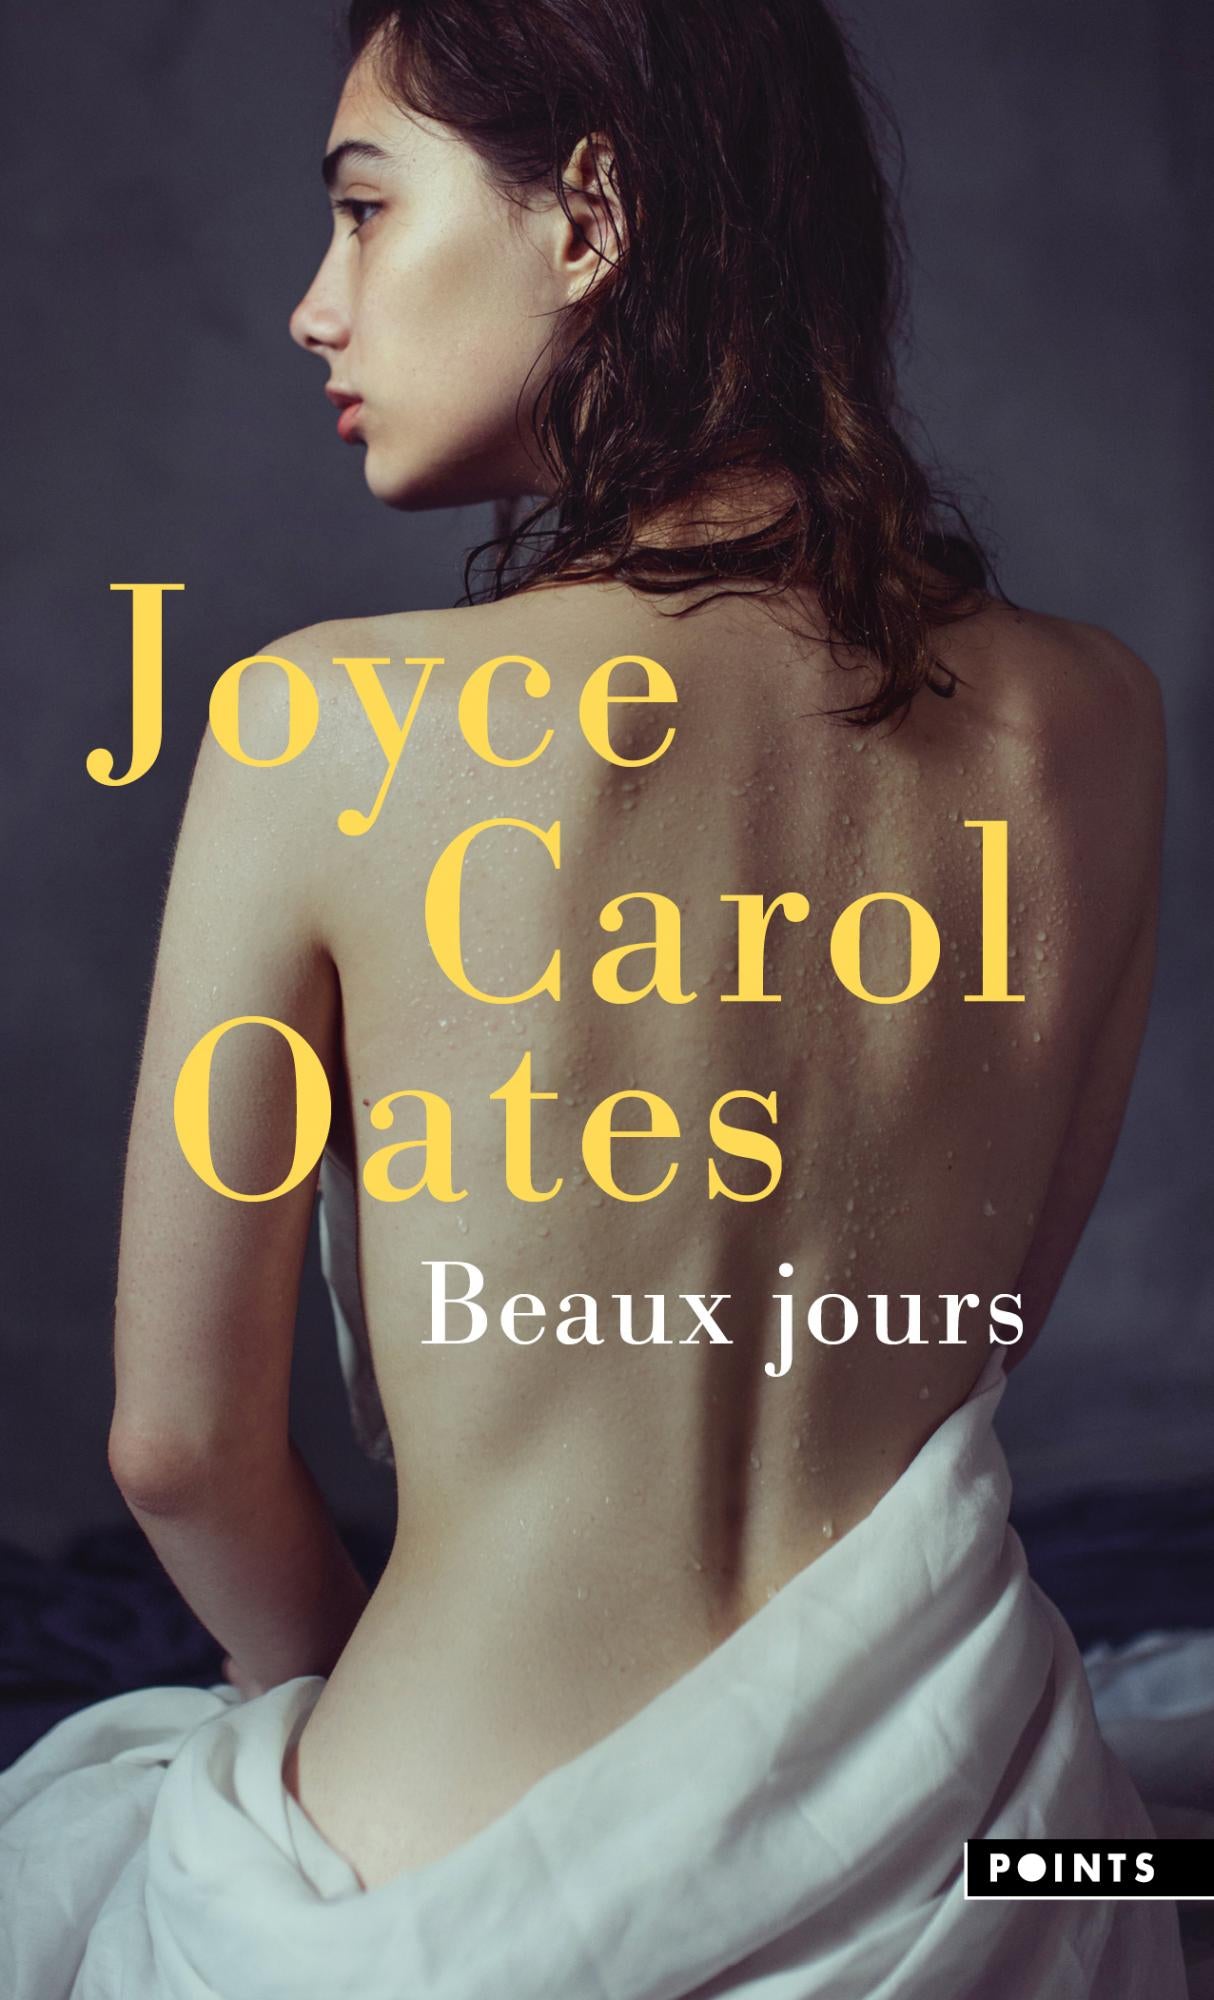 Beaux jours - Joyce Carol Oates